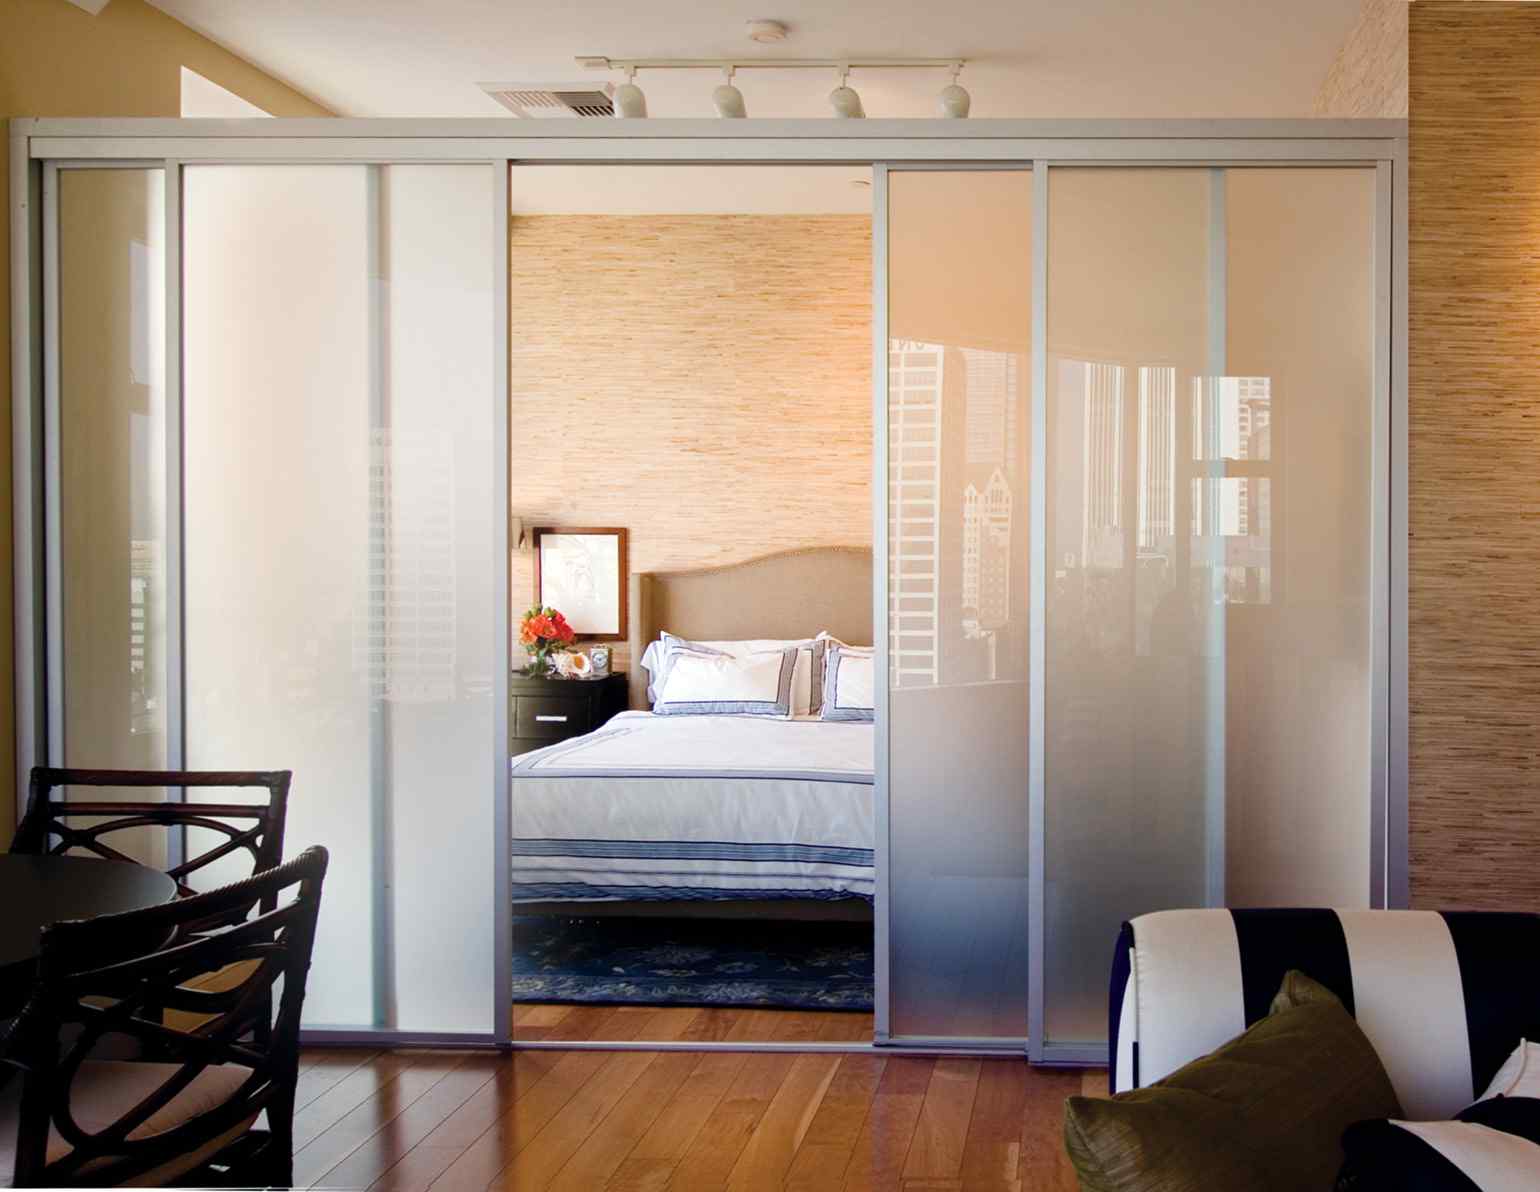 Living Room With Sliding Glass Door Arrangement